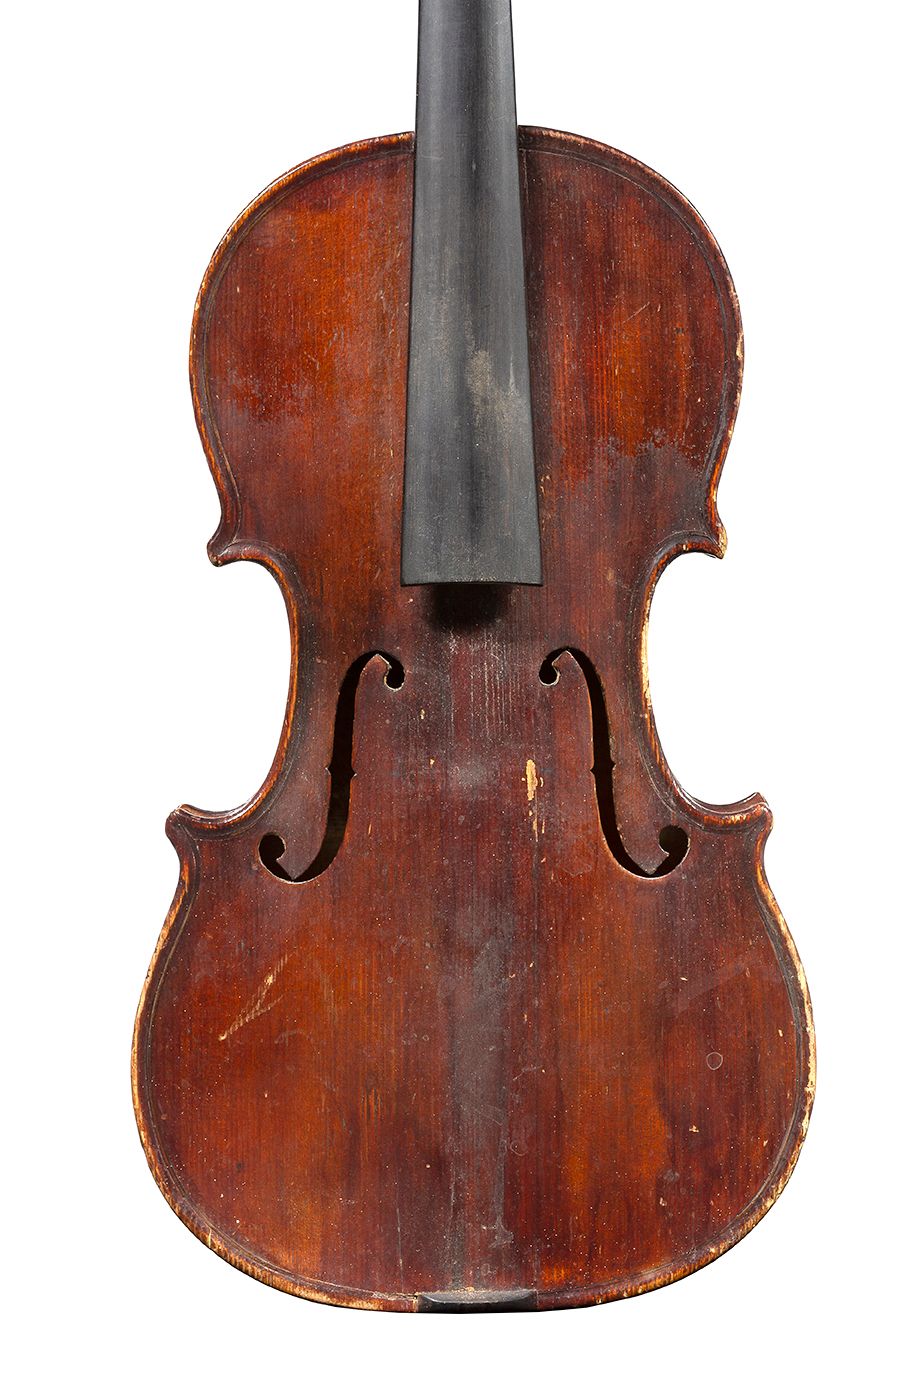 Null Violín de Louis Moitessier
Hacia 1800 en Mirecourt
Lleva la etiqueta de Lou&hellip;